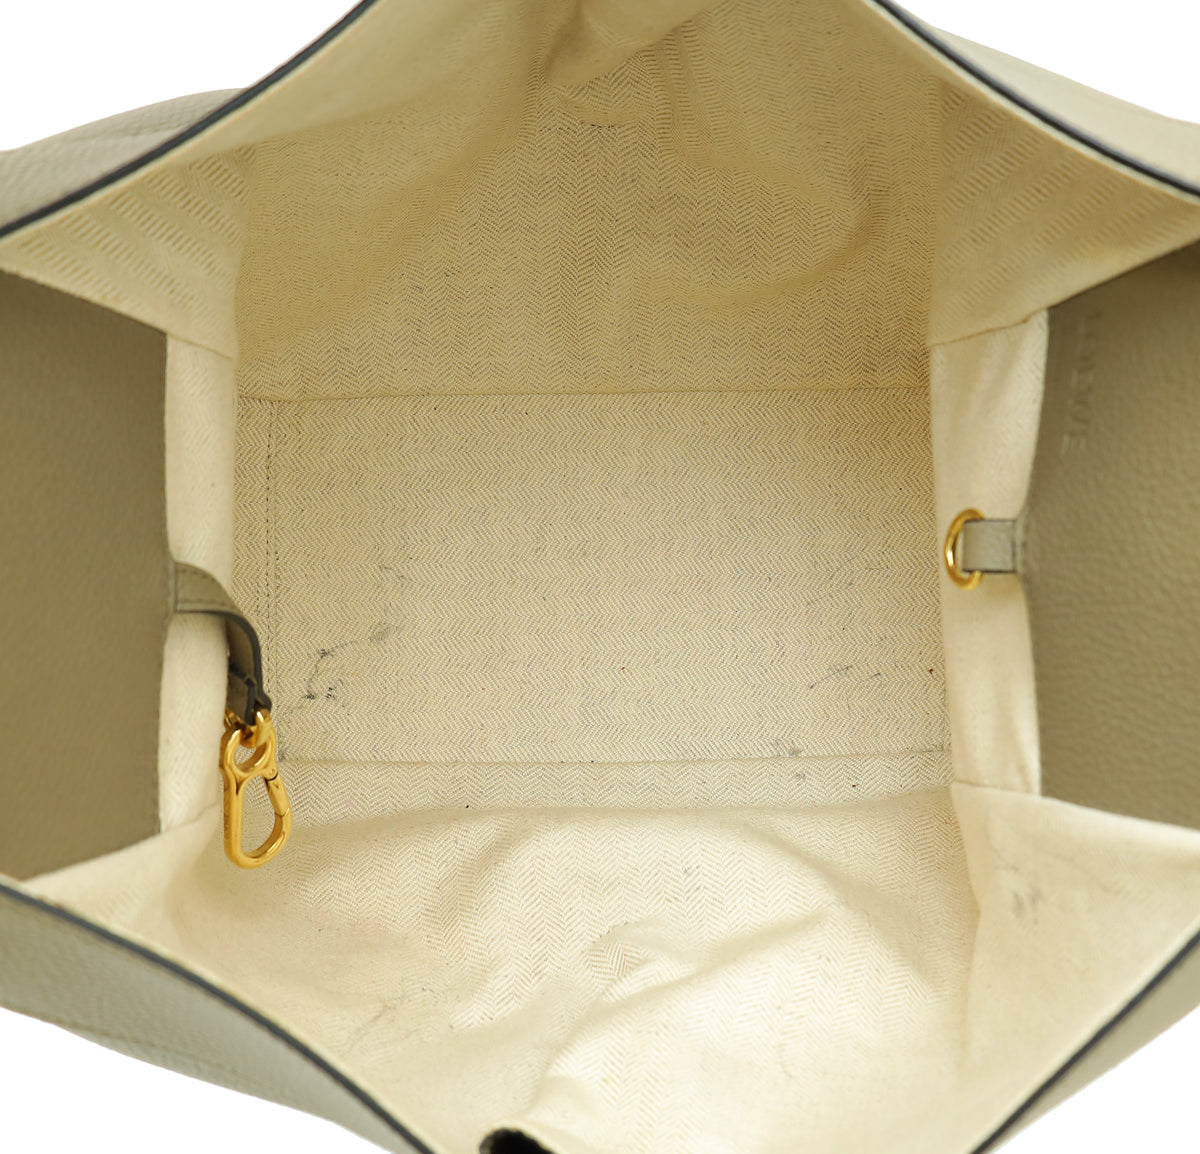 Loewe Laurel Green Small Hammock Shoulder Bag